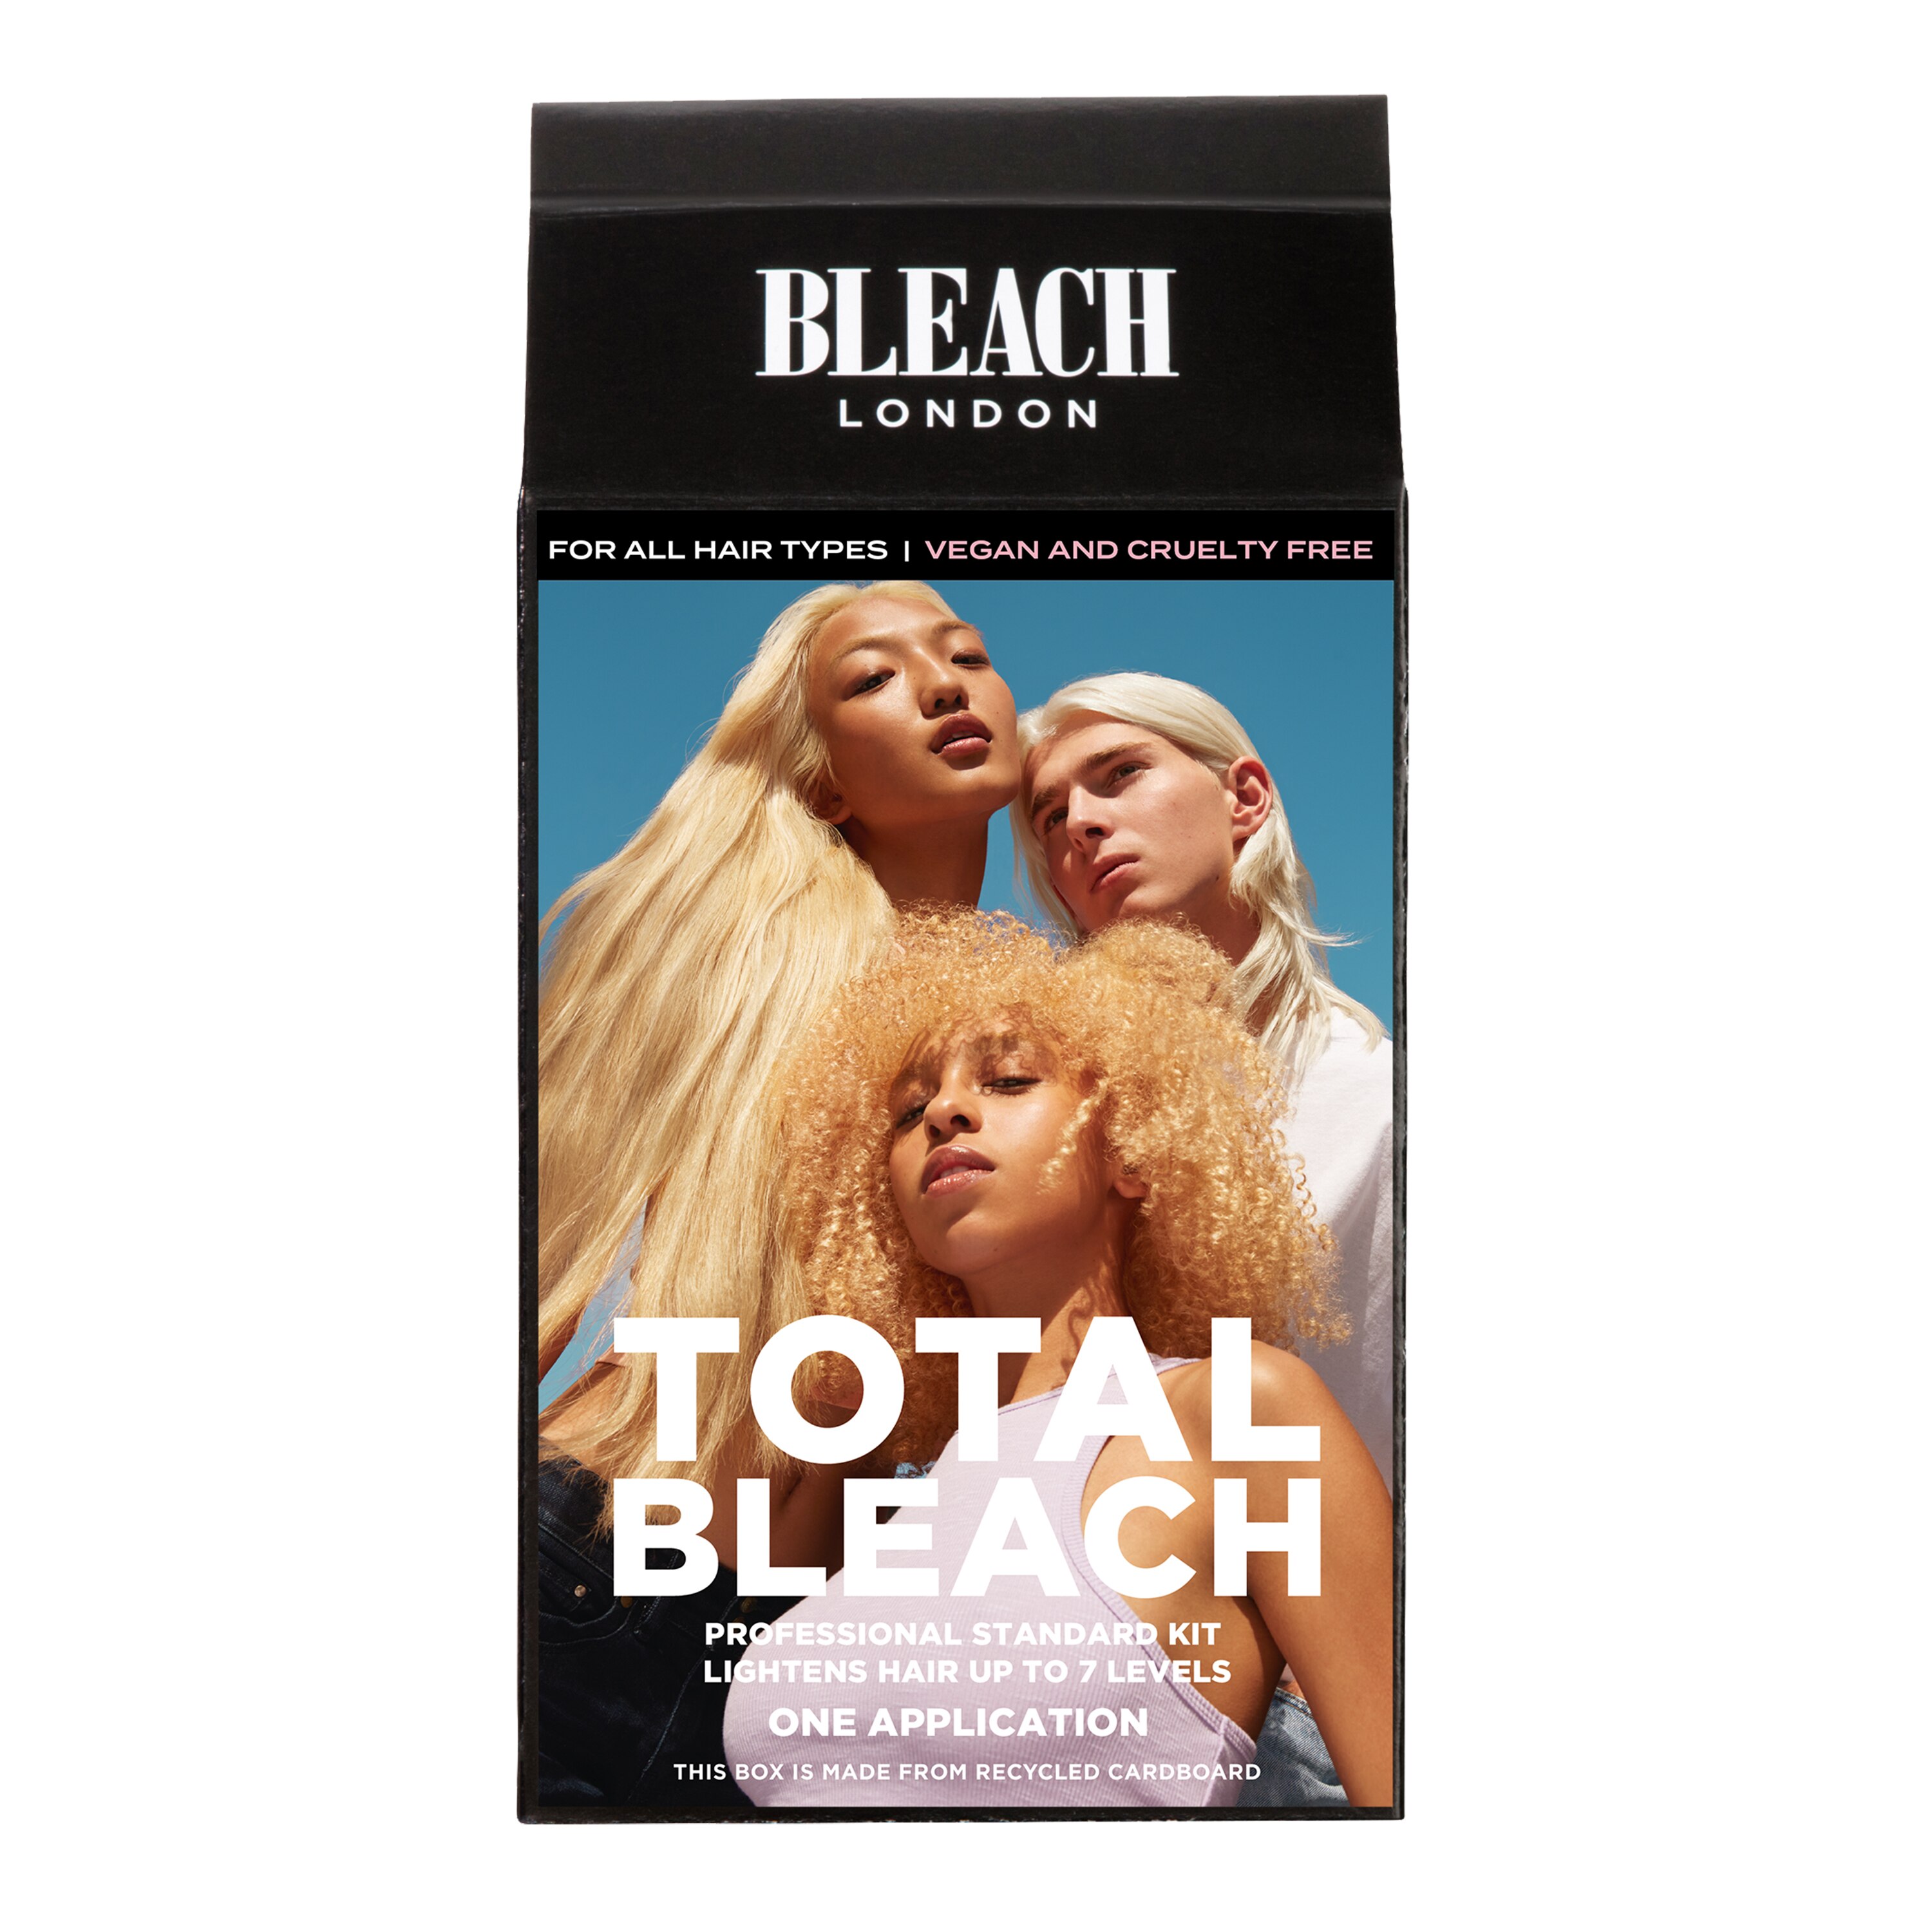 Bleach London Total Bleach Kit - 1 , CVS